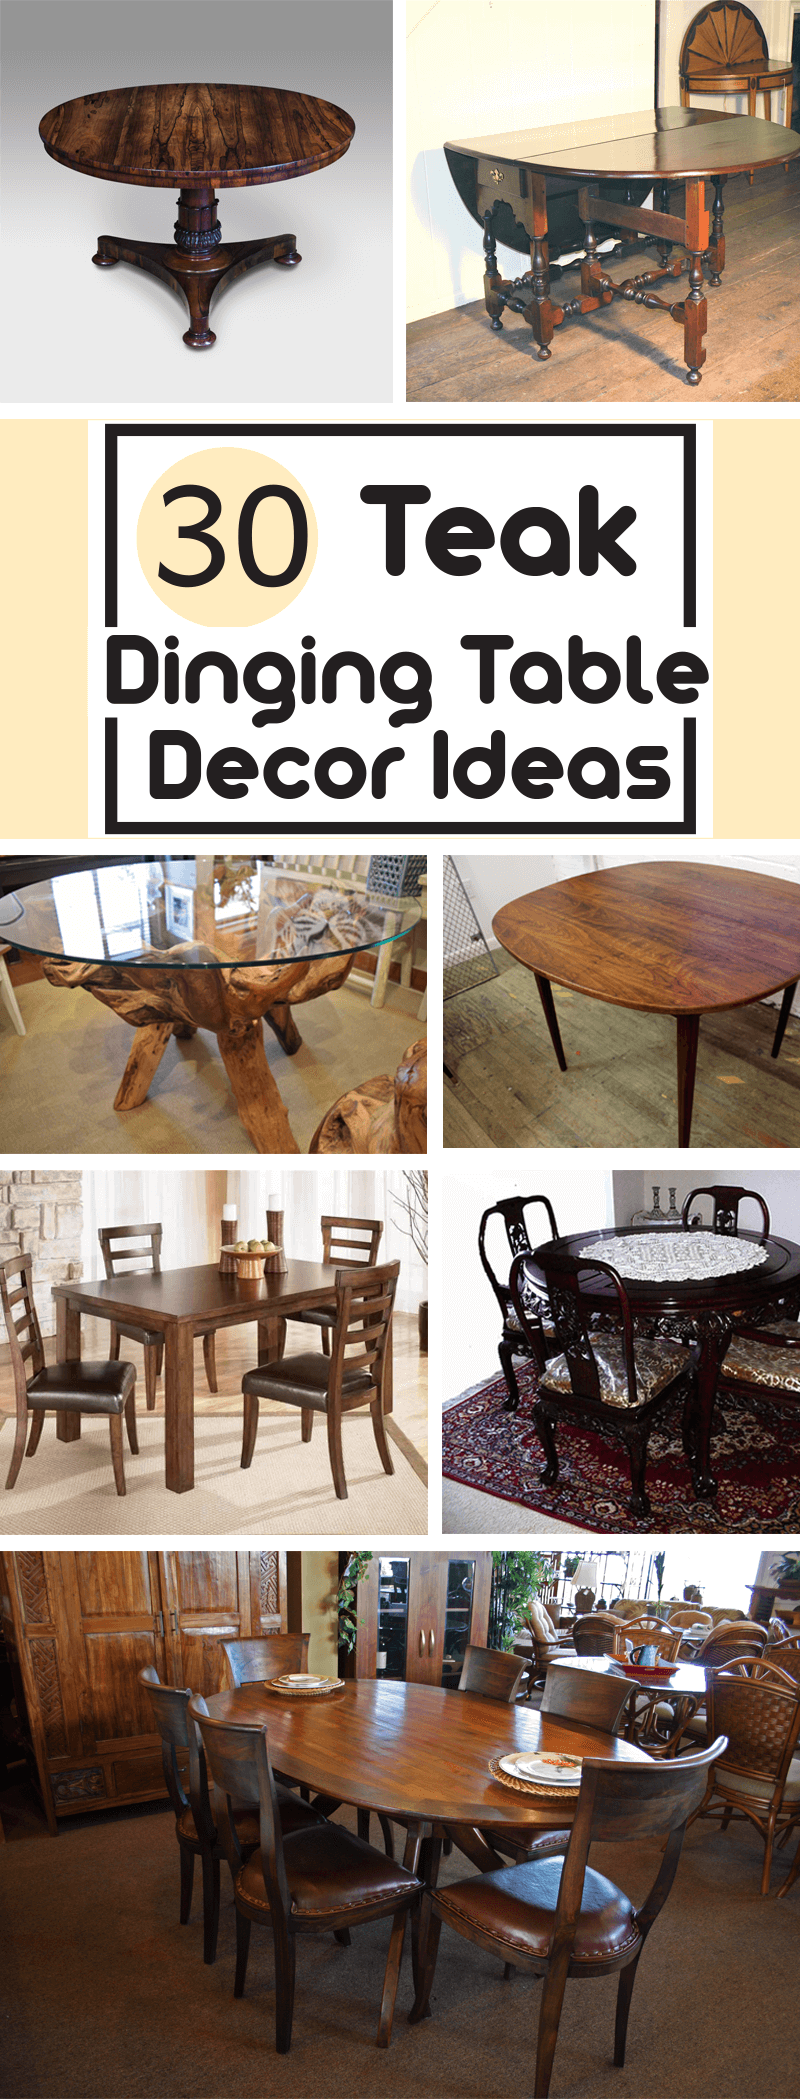 Dining Table Decor Ideas